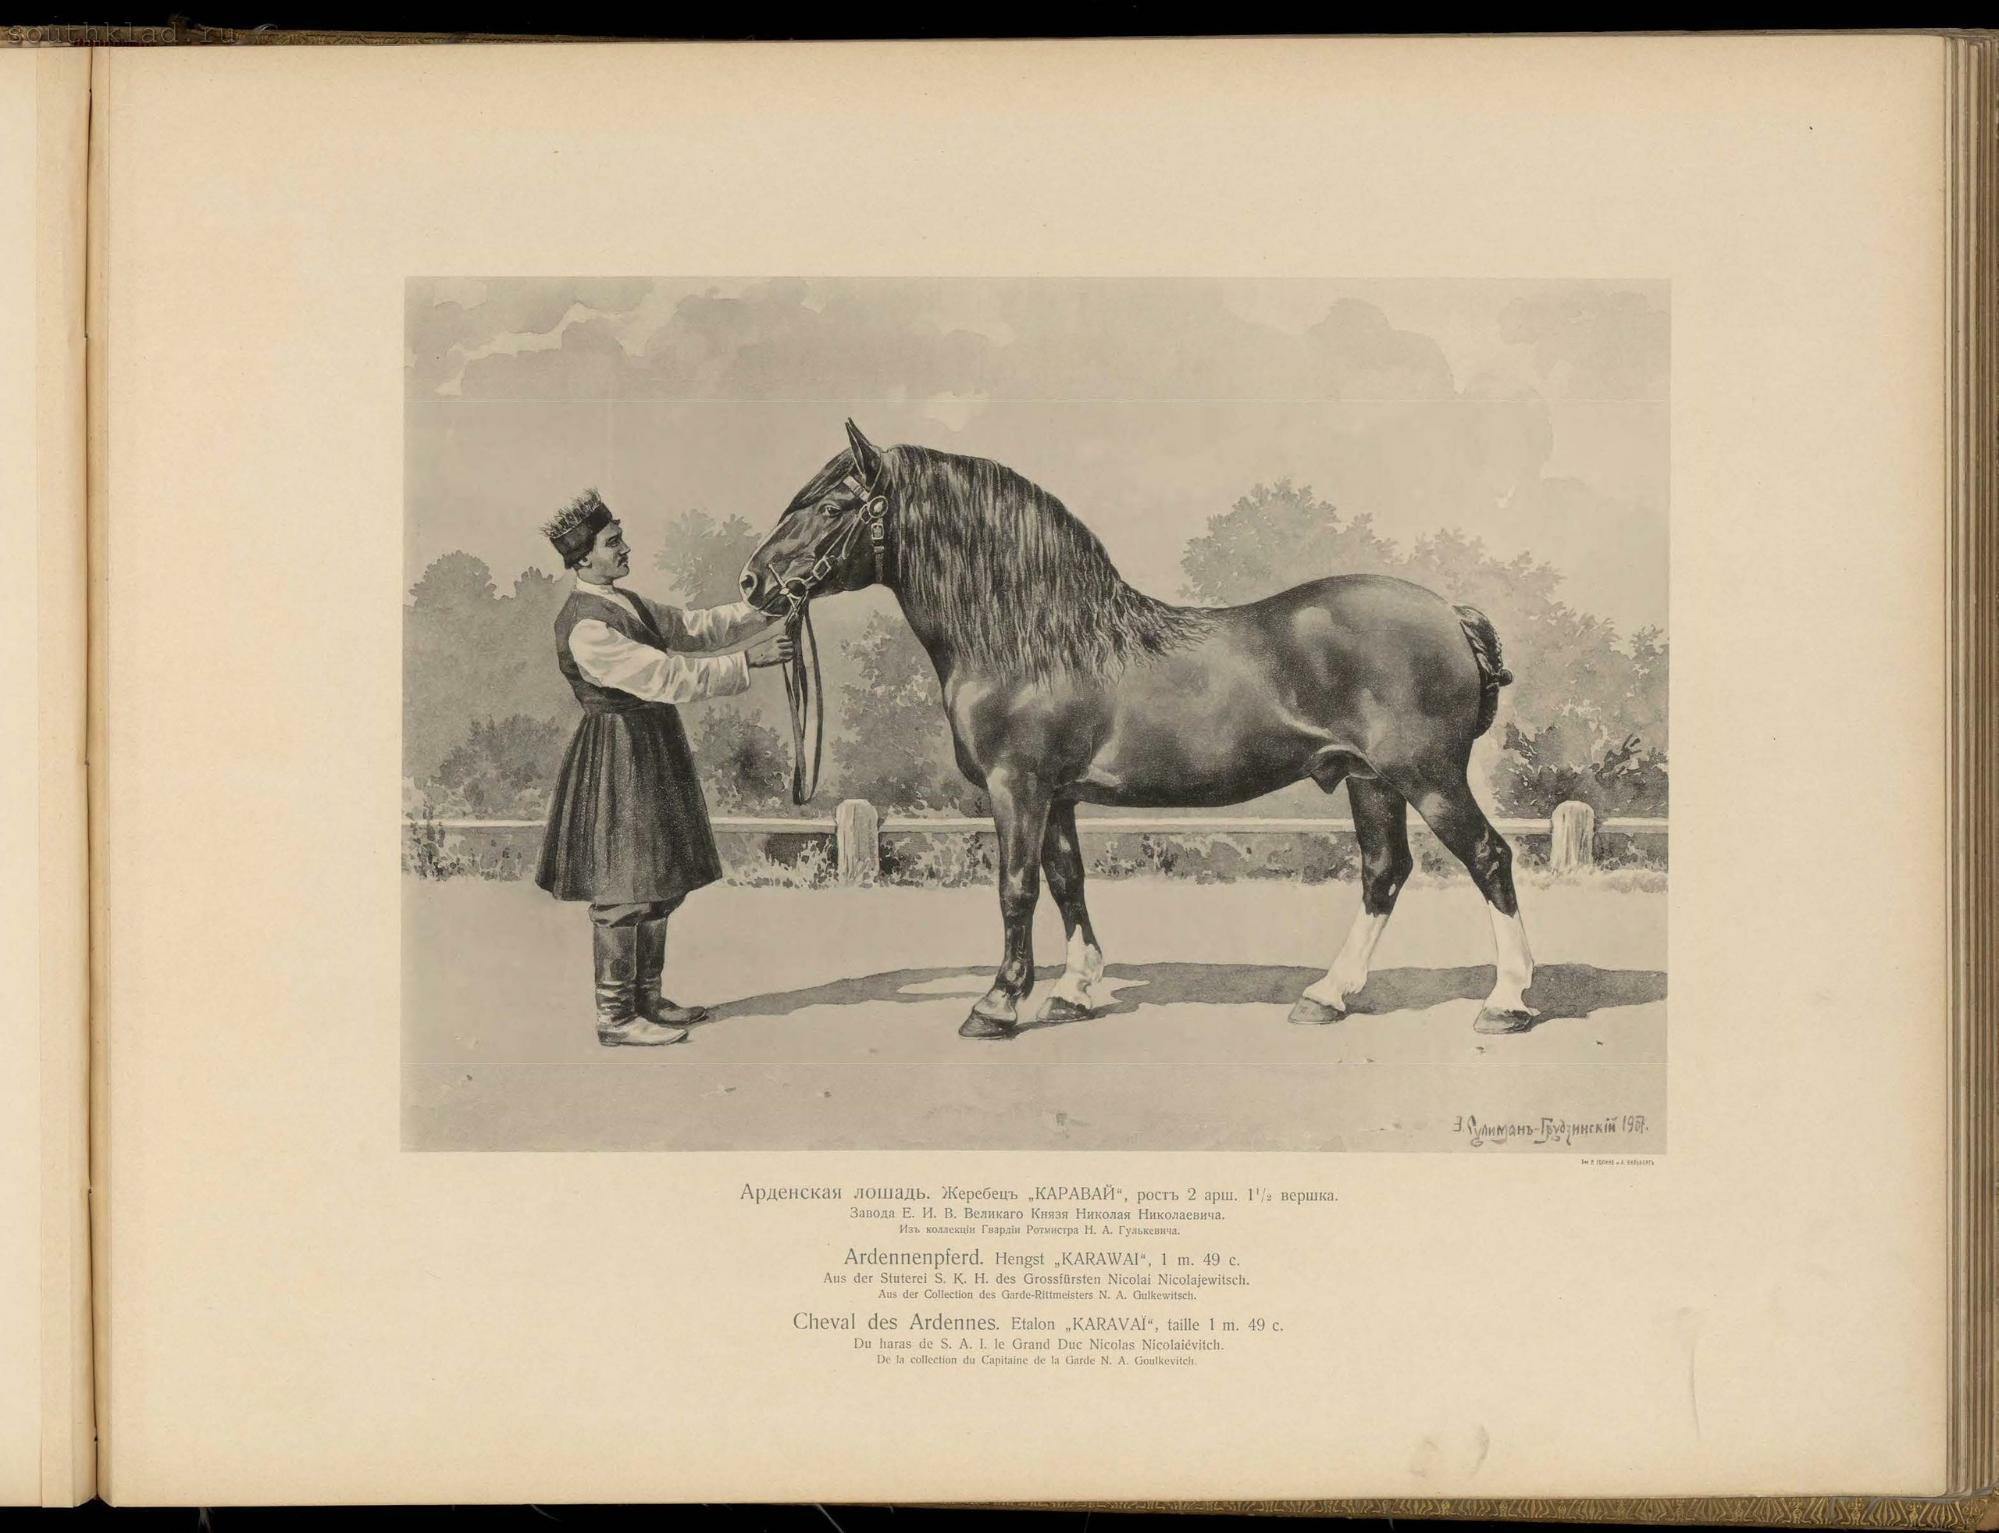 Рассмотрите фотографию коричневой лошади породы русская тяжеловозная и выполните задания